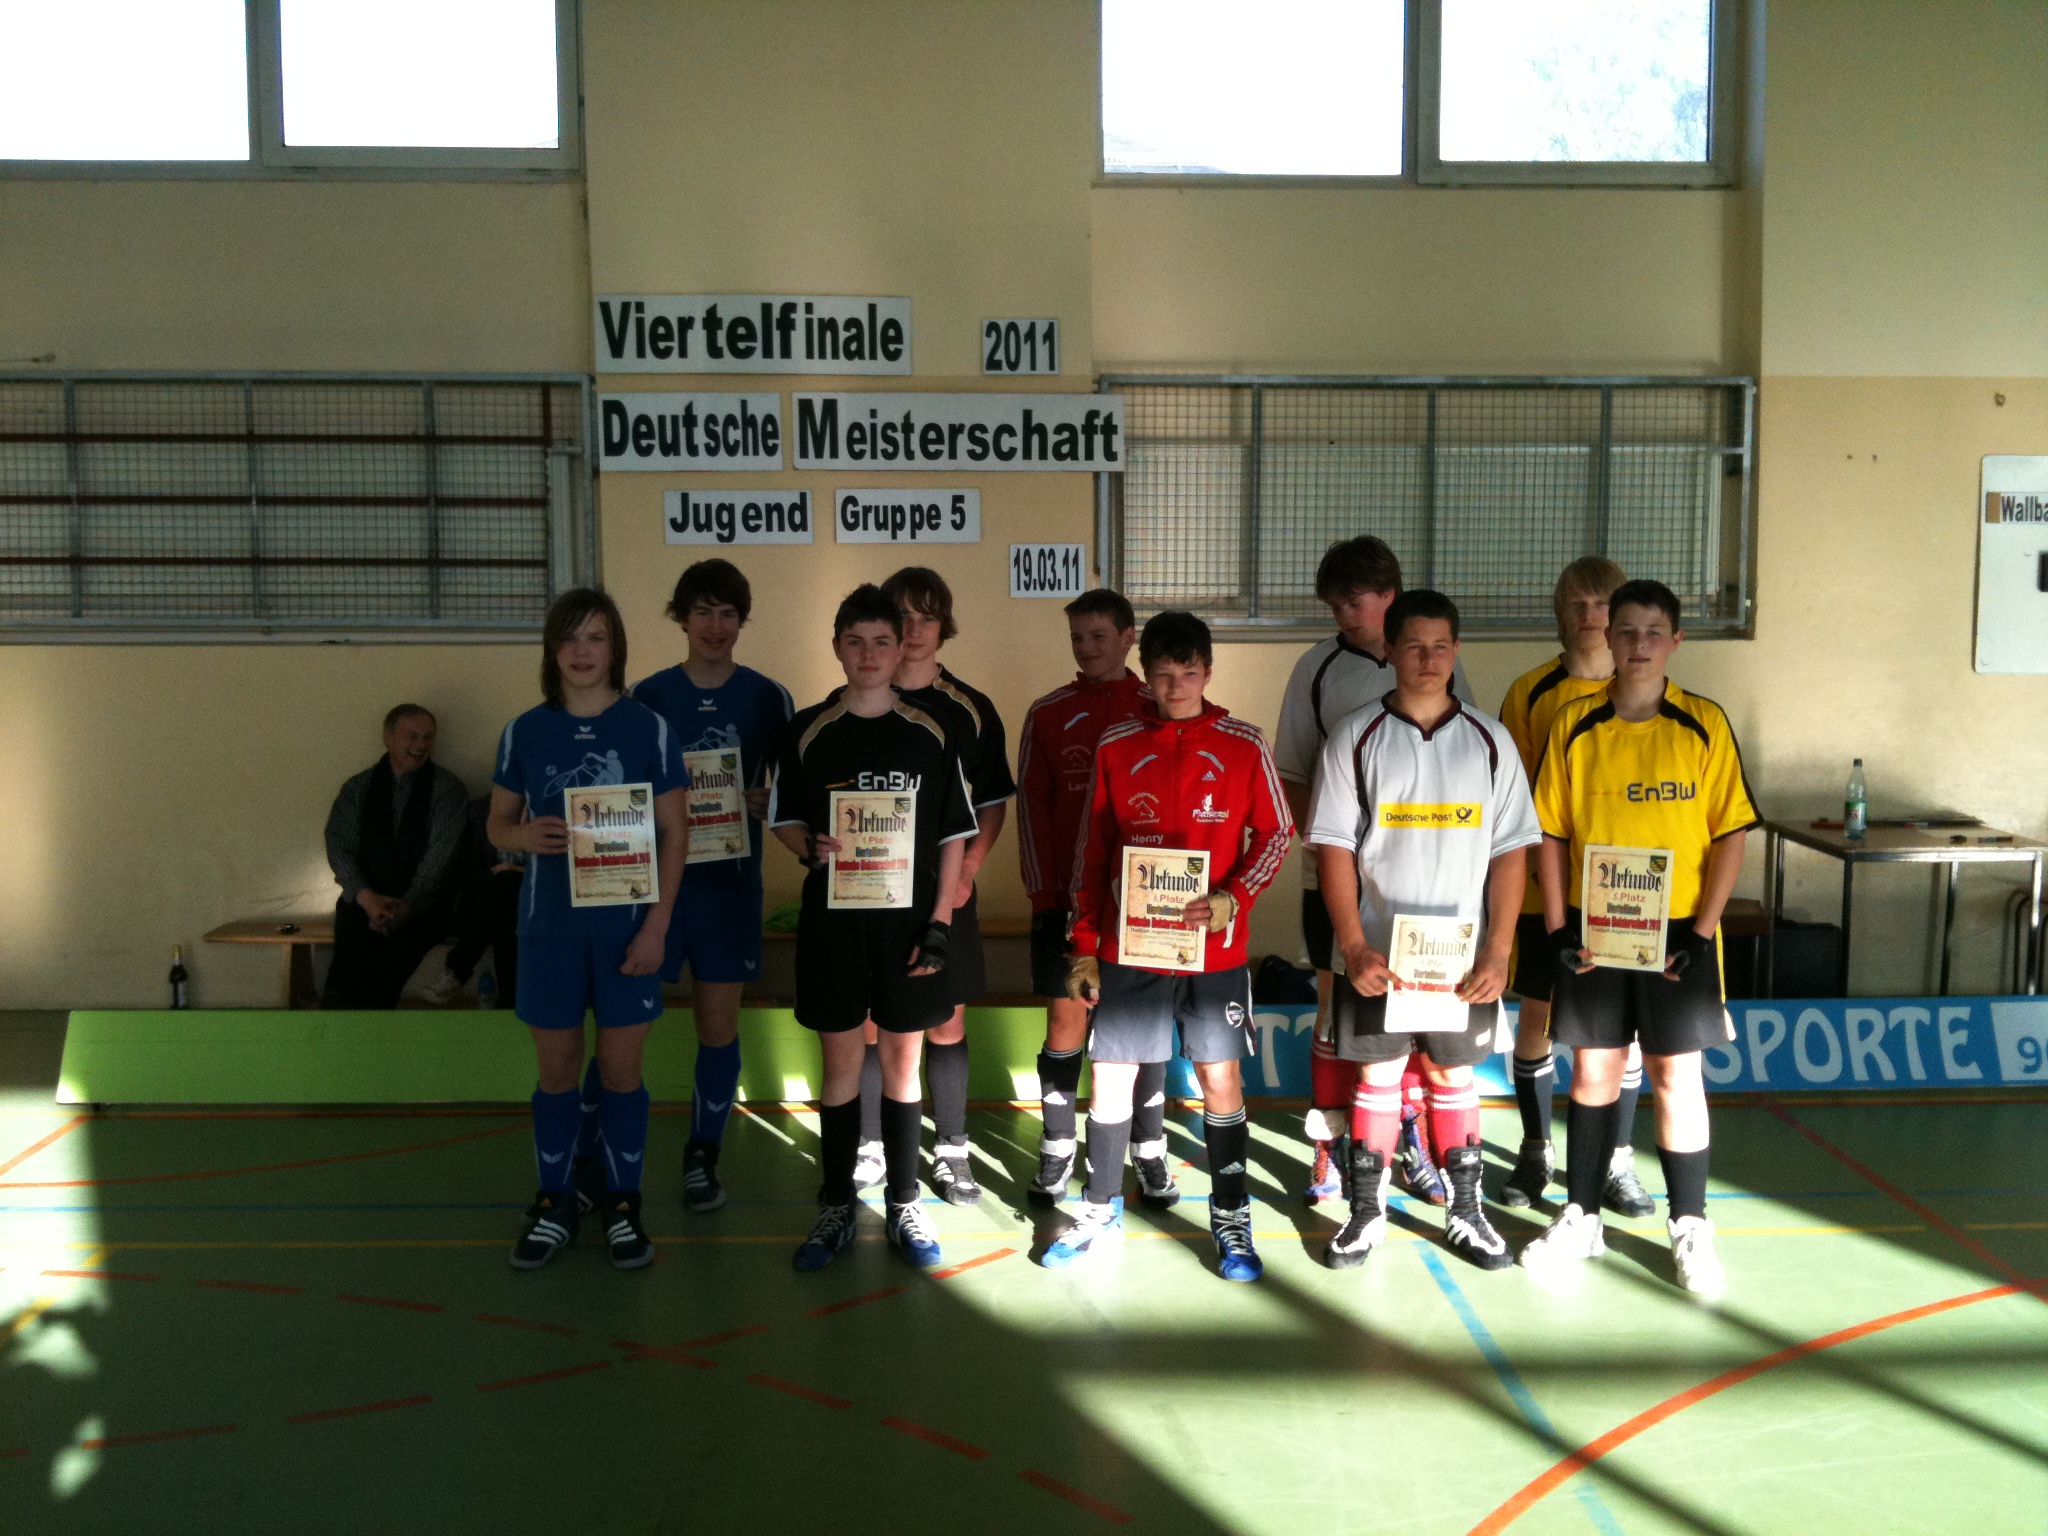 Viertelfinale Deutsche Meisterschaft 2011 U17